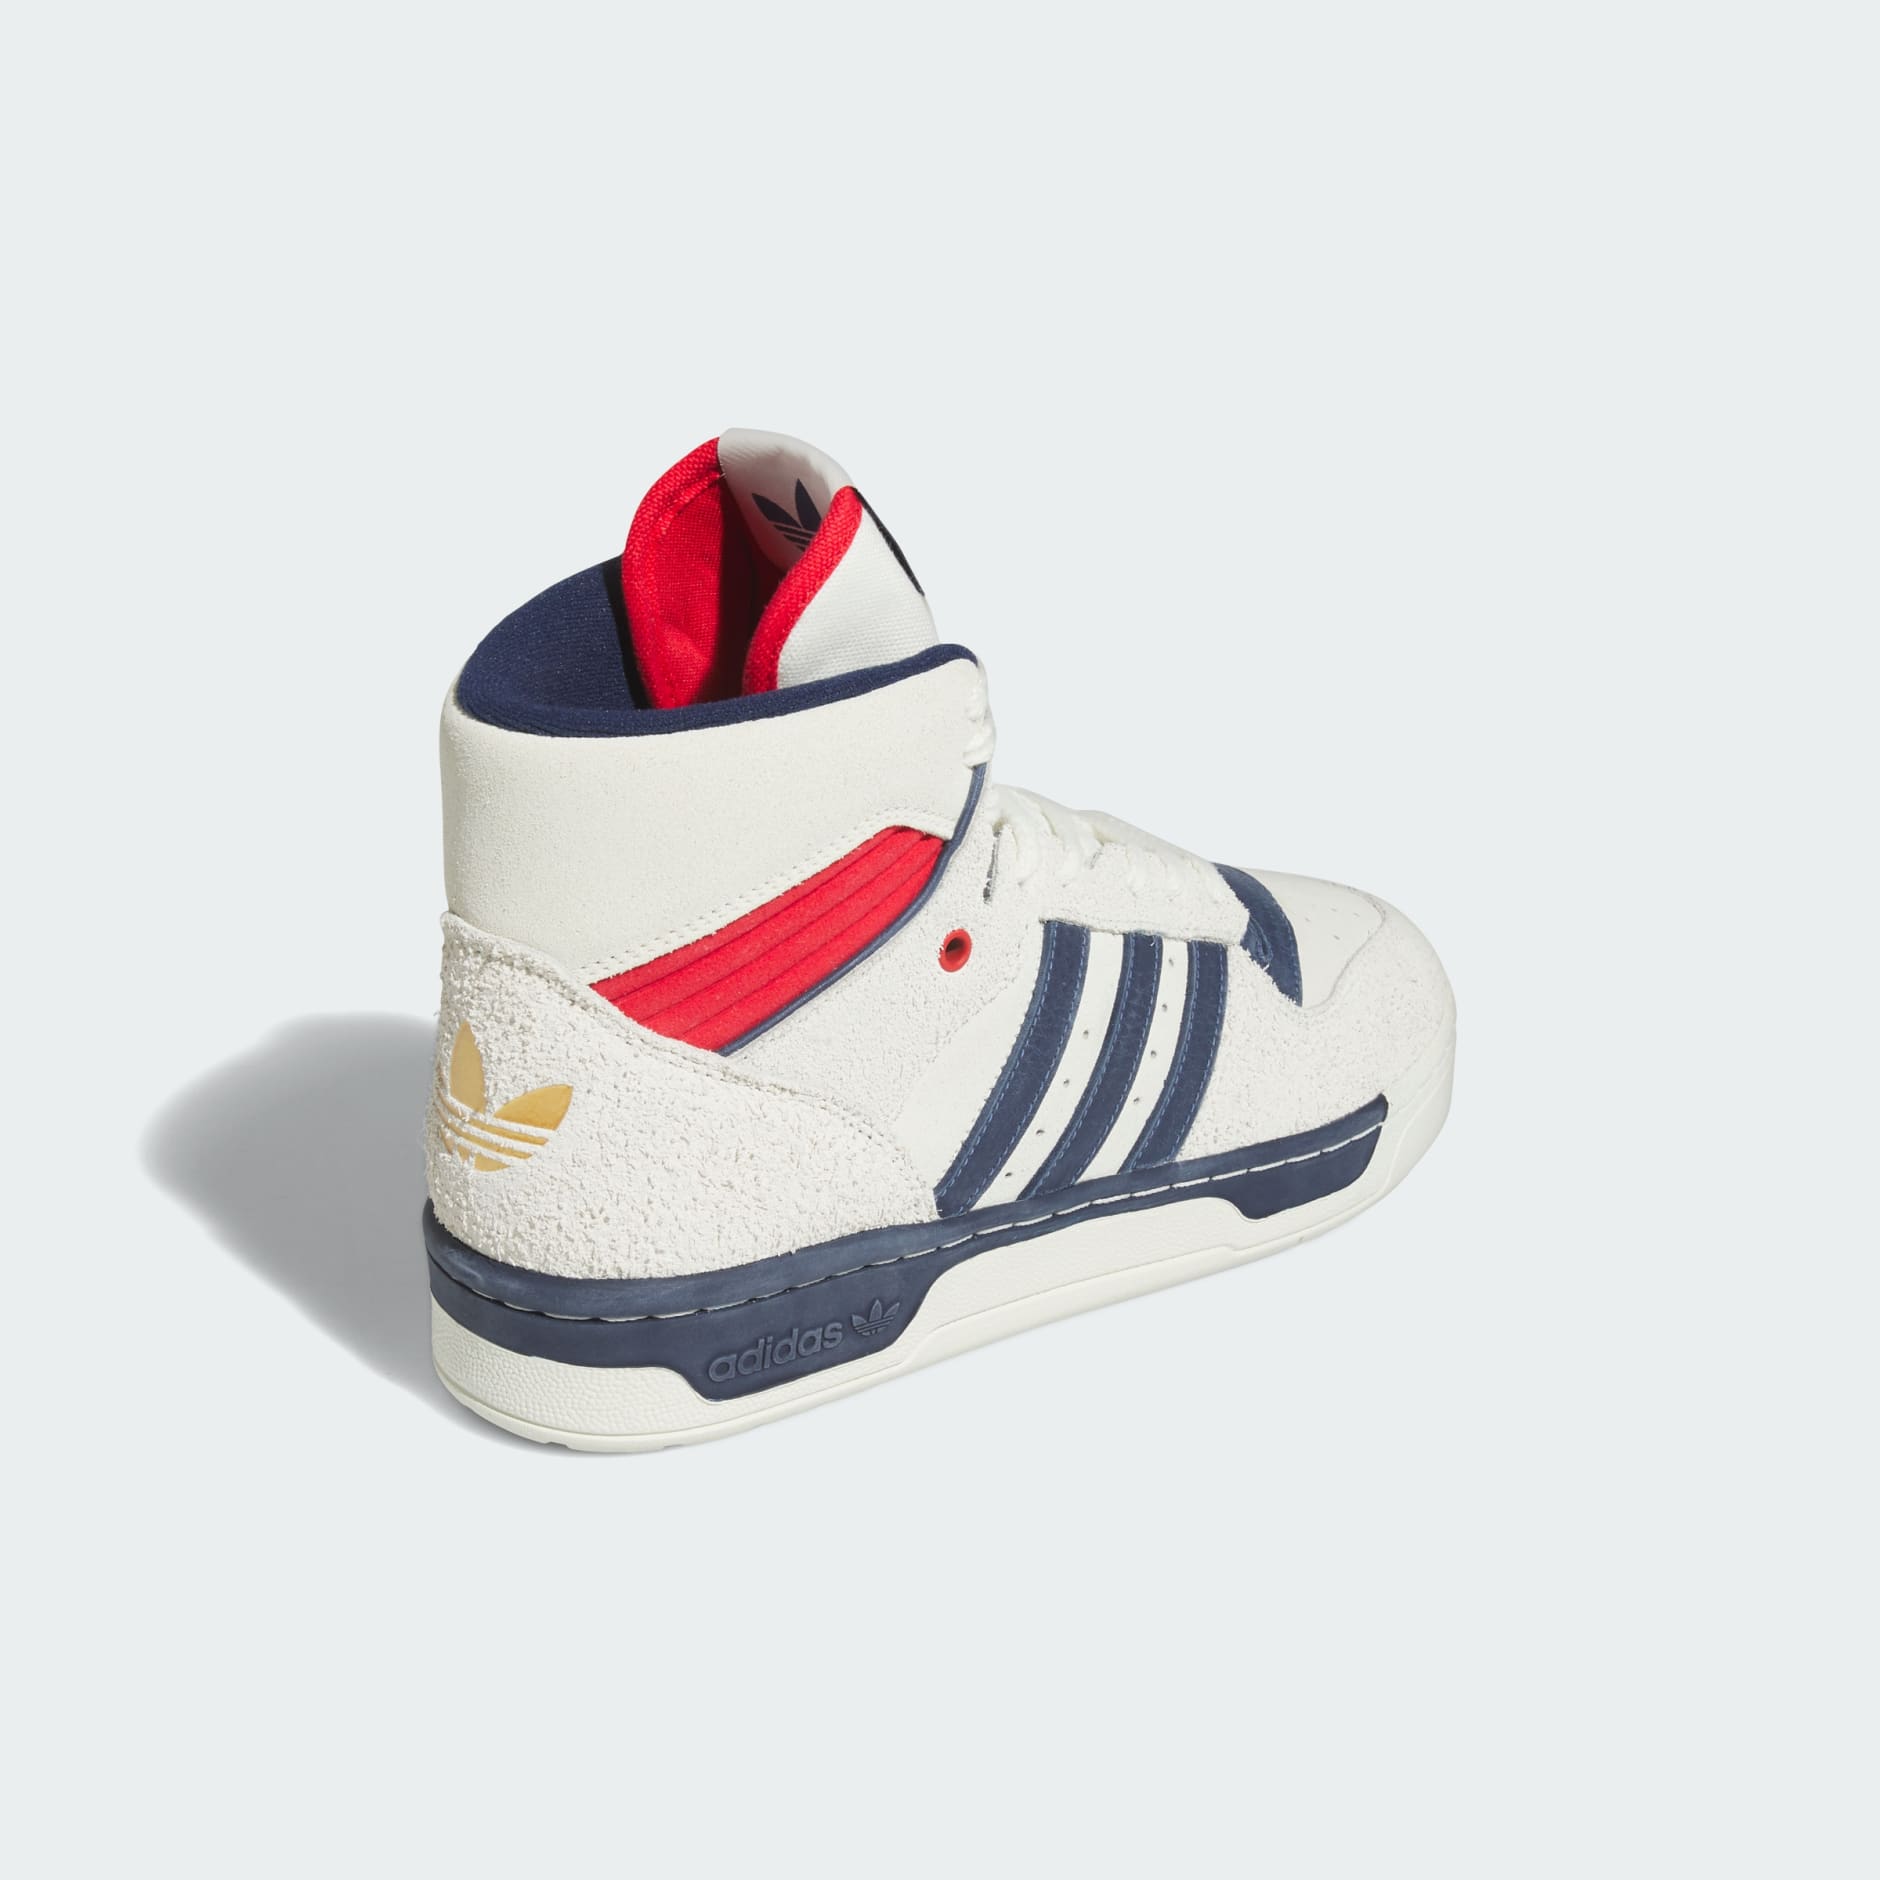 Buy Blue Casual Shoes for Men by Adidas Originals Online | Ajio.com